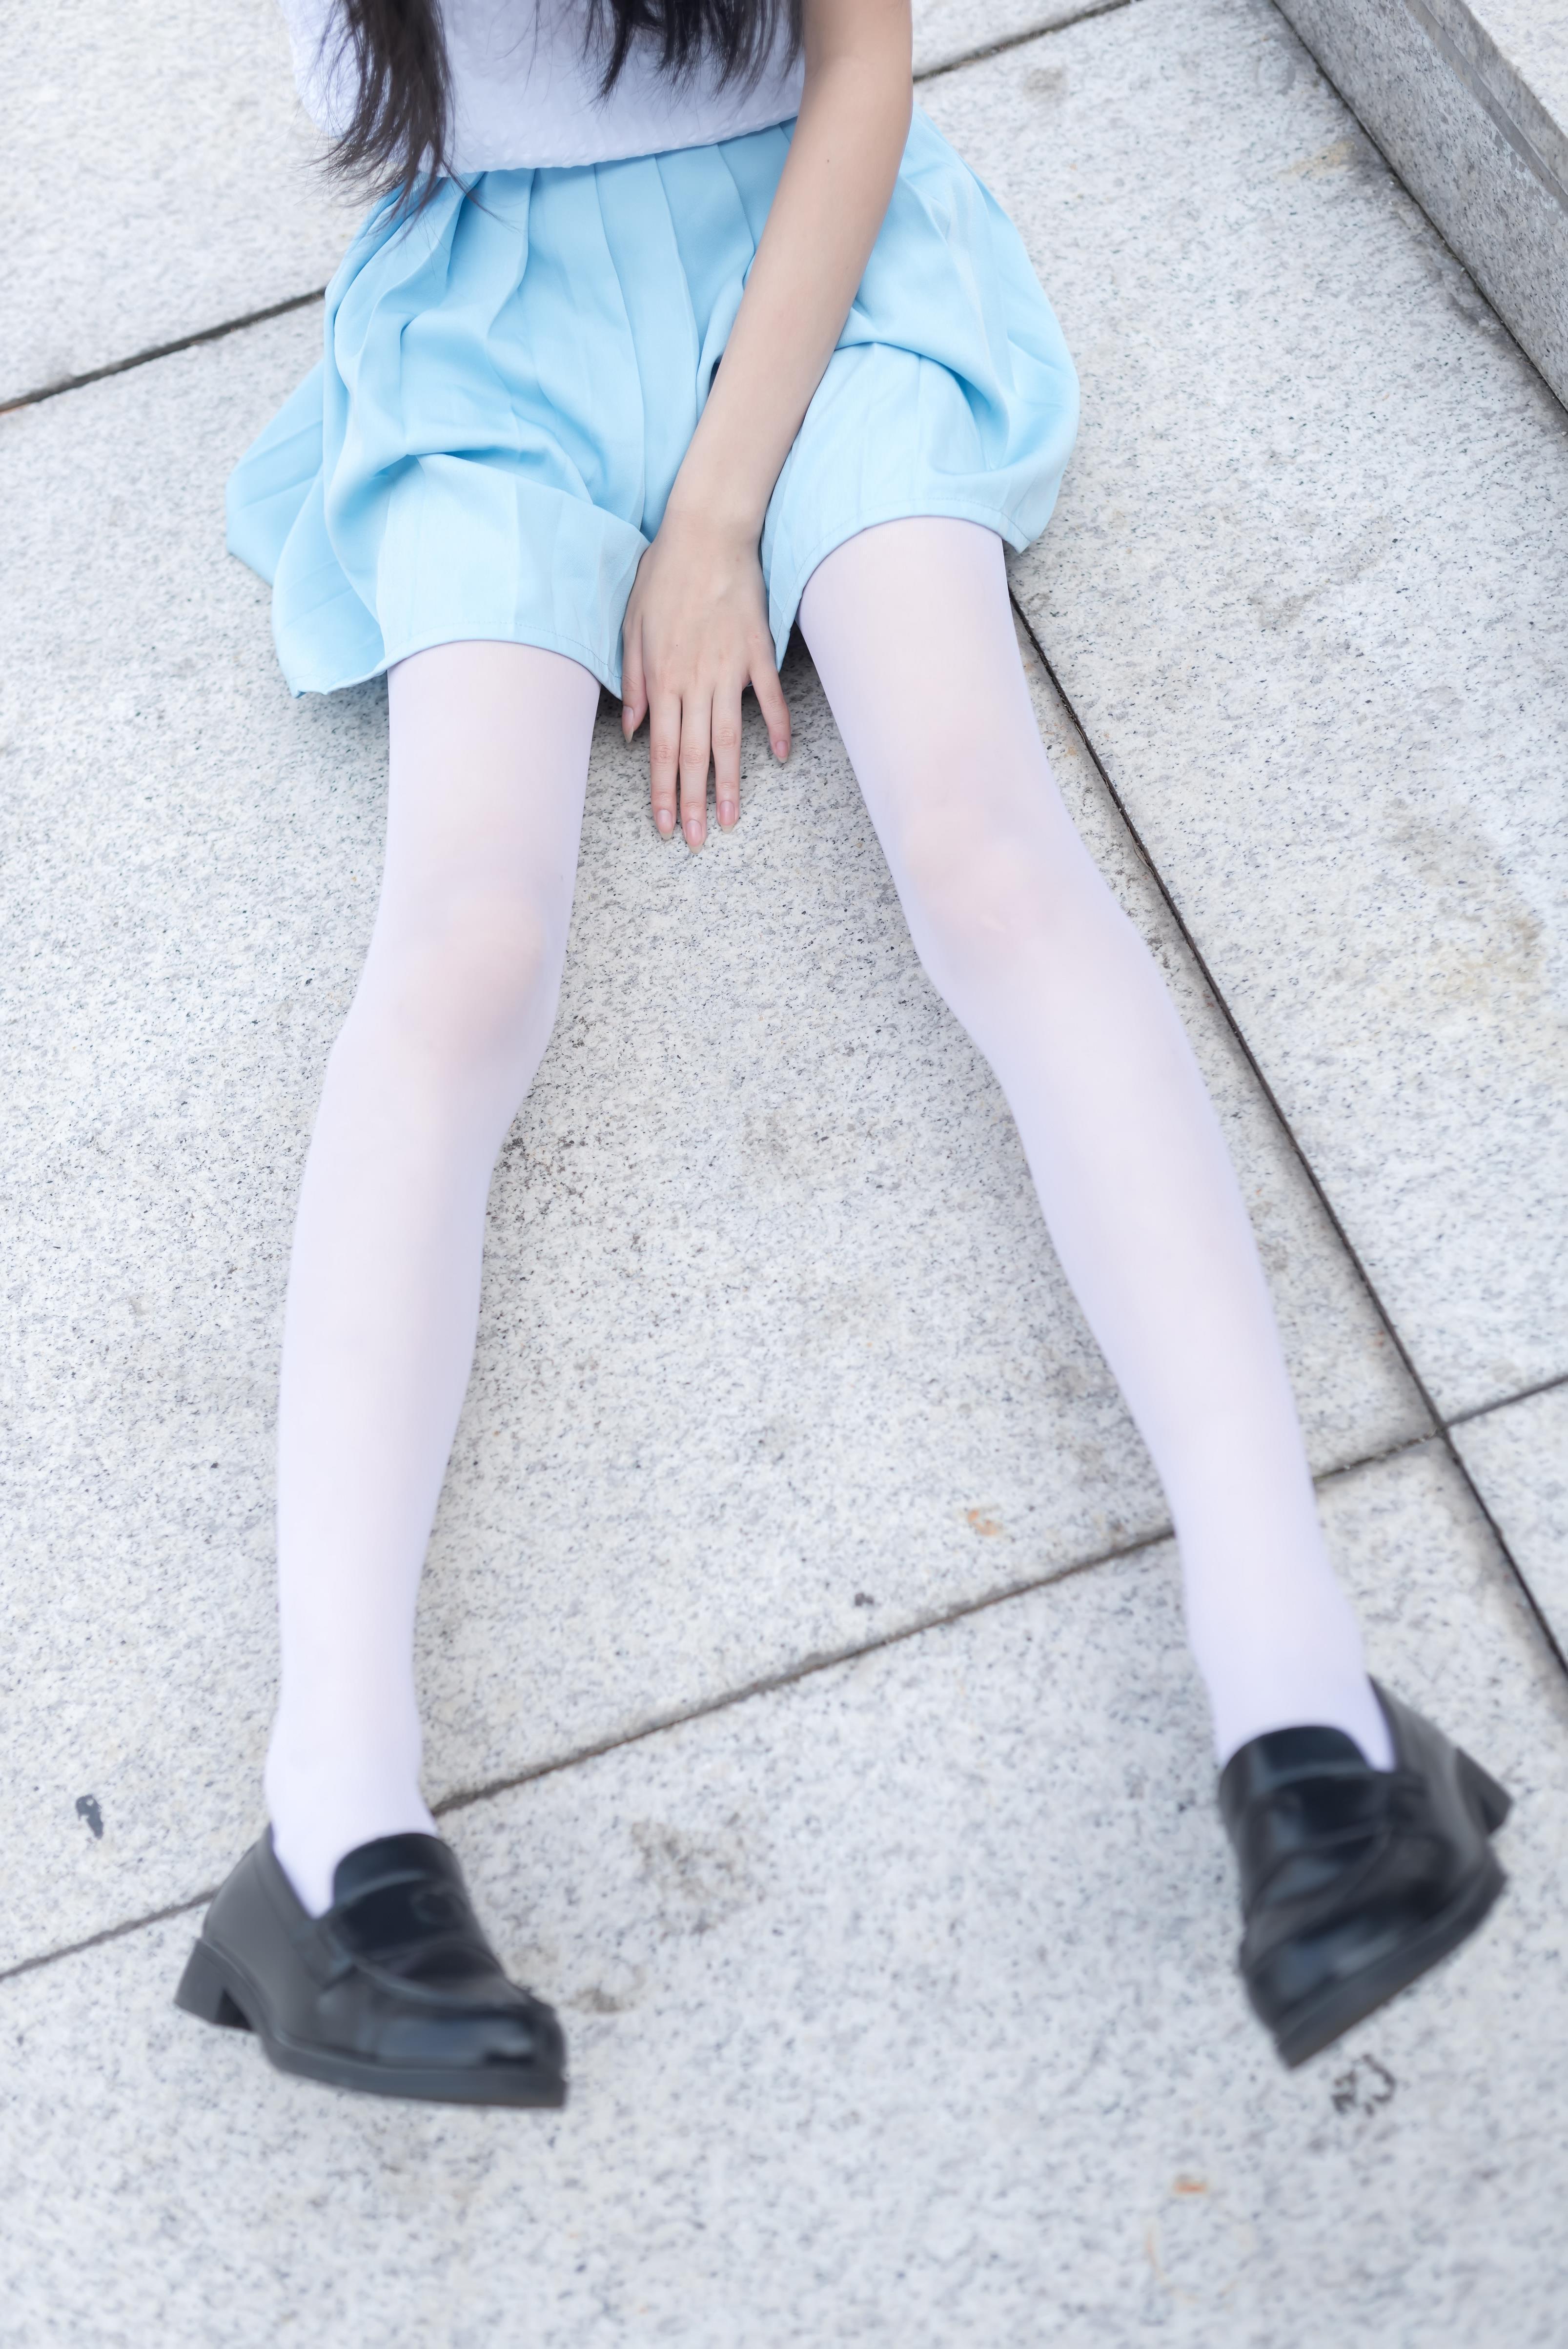 [风之领域]NO.028 性感小萝莉白色镂空上衣与淡蓝色短裙加白色丝袜美腿私房写真集,